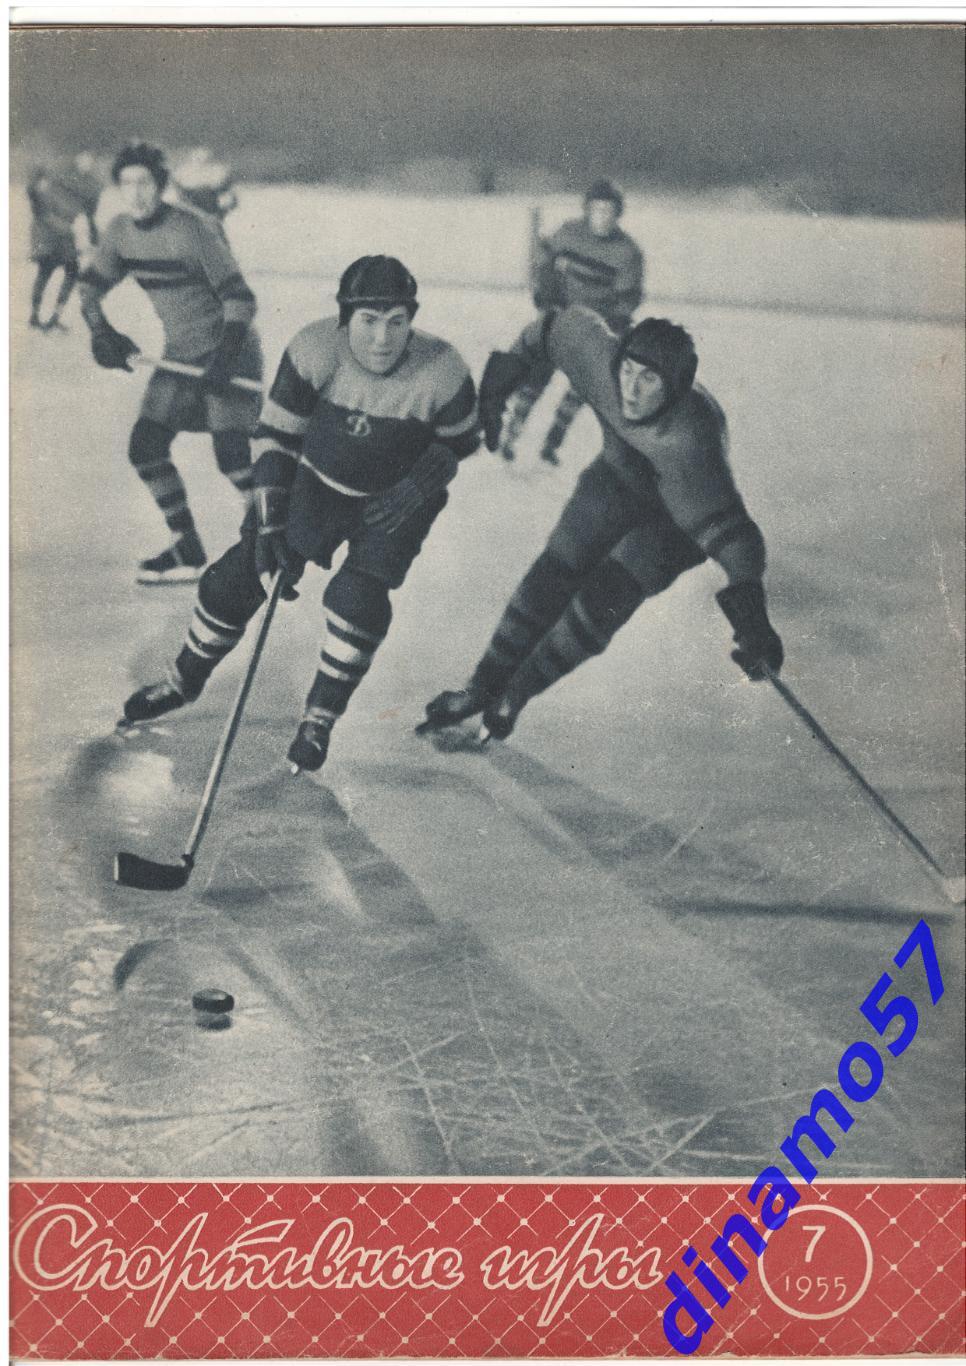 Журнал Спортивные игры№ 7 1955